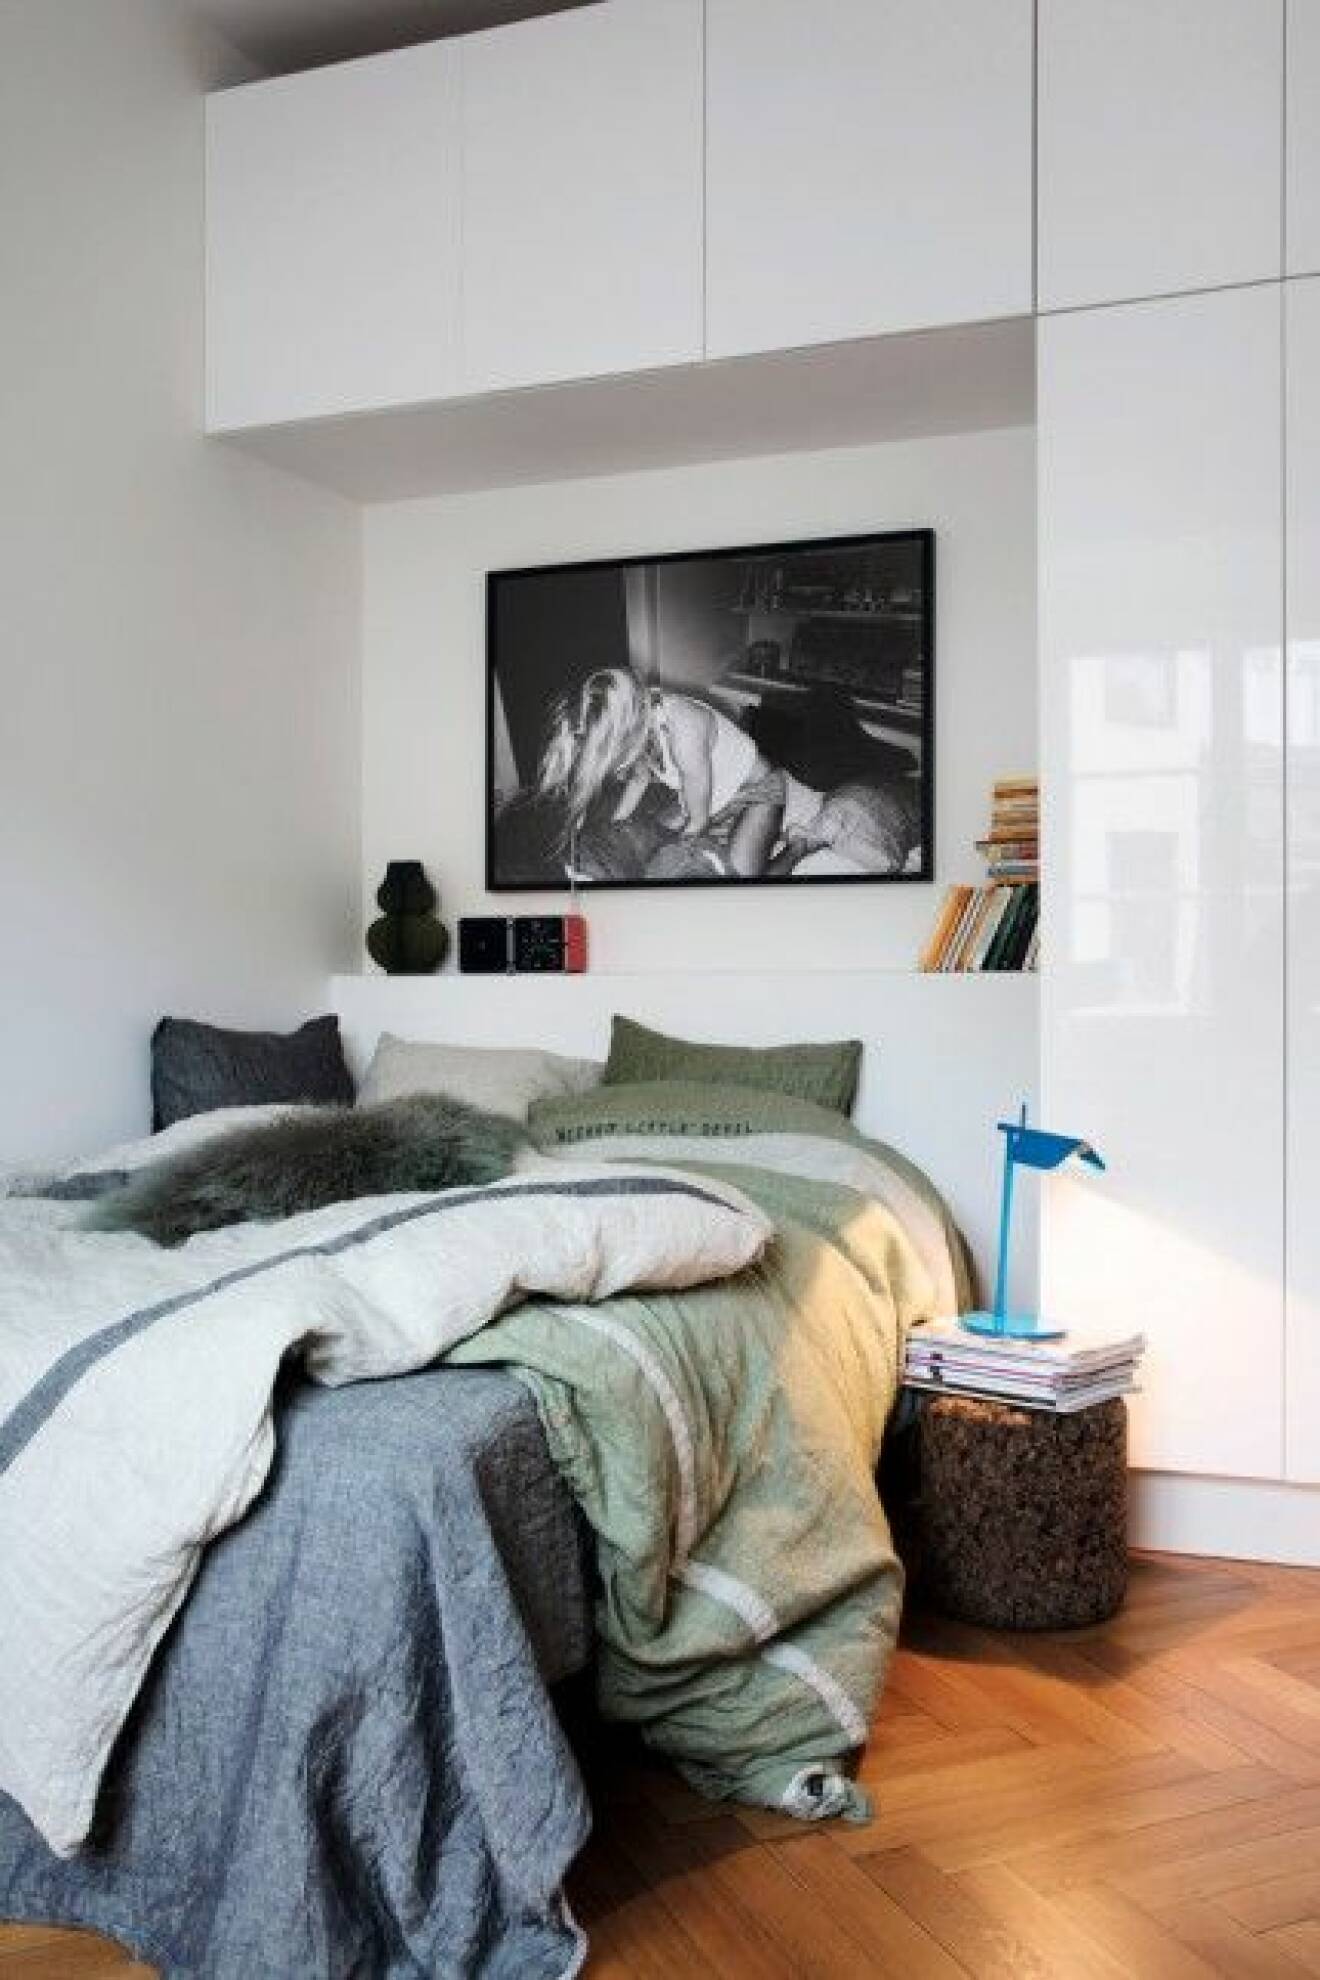 Sovrum-inbygd-garderob-lovely-linnen-fotokonst-bokförvaring-sängbord-sänglampa-111